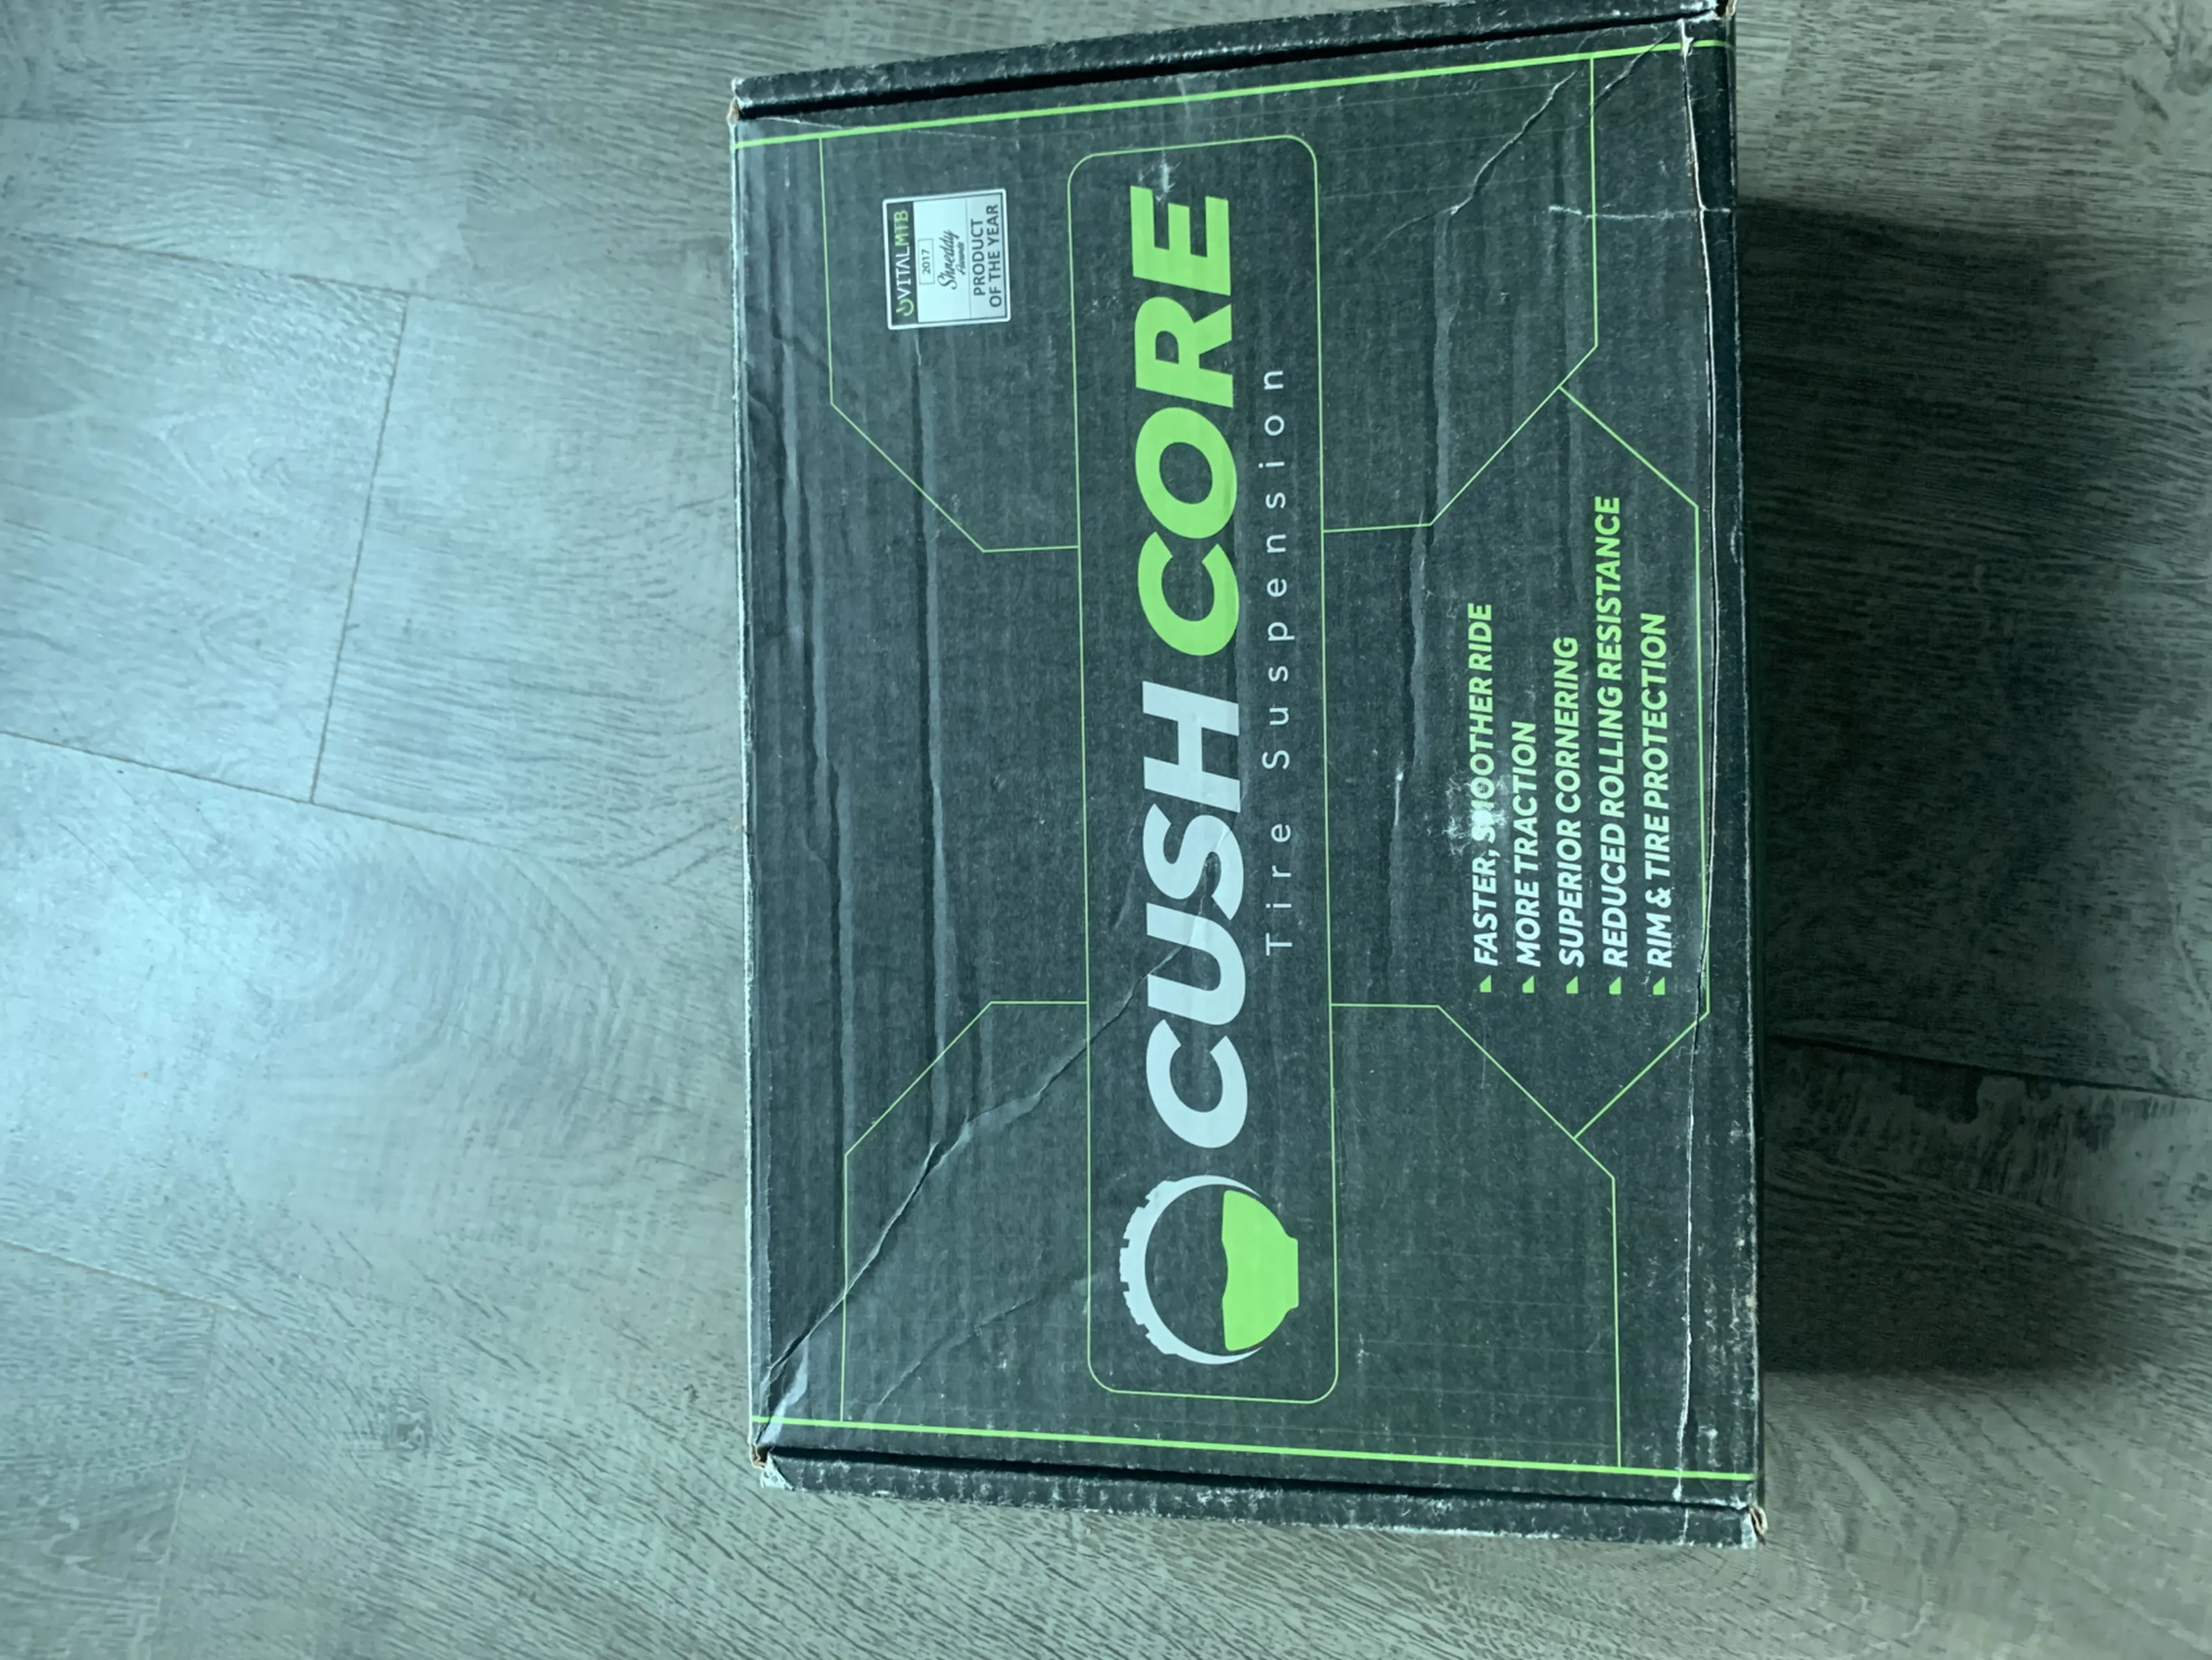 1. Cush Core 29 Pro